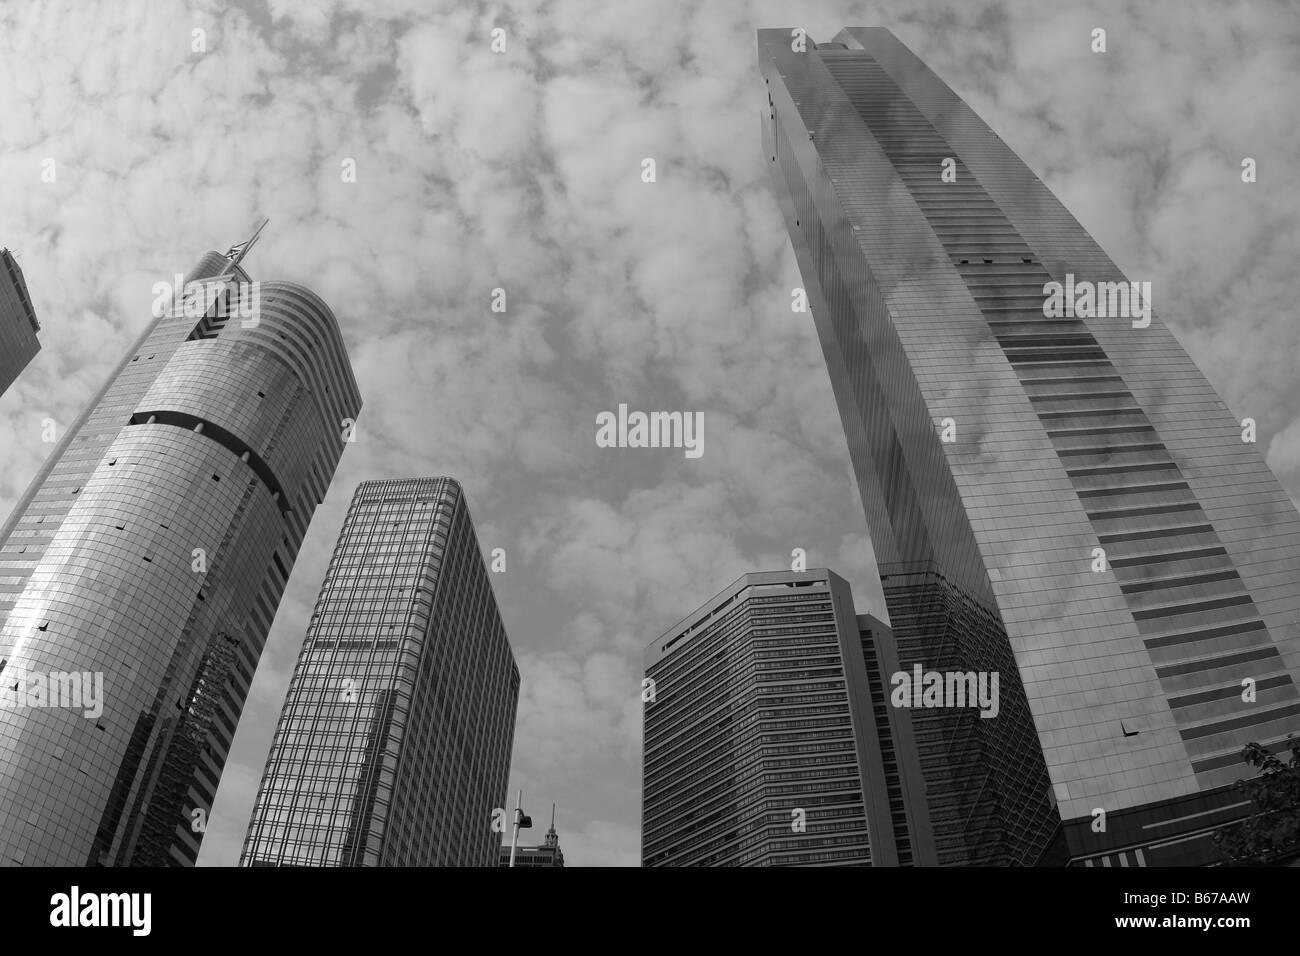 Le PIB chinois de plus en plus de gratte-ciel chinois Chine Centre-ville de Canton Guangzhou Chine Skyline Marché Intérieur super puissance économique majeure Banque D'Images